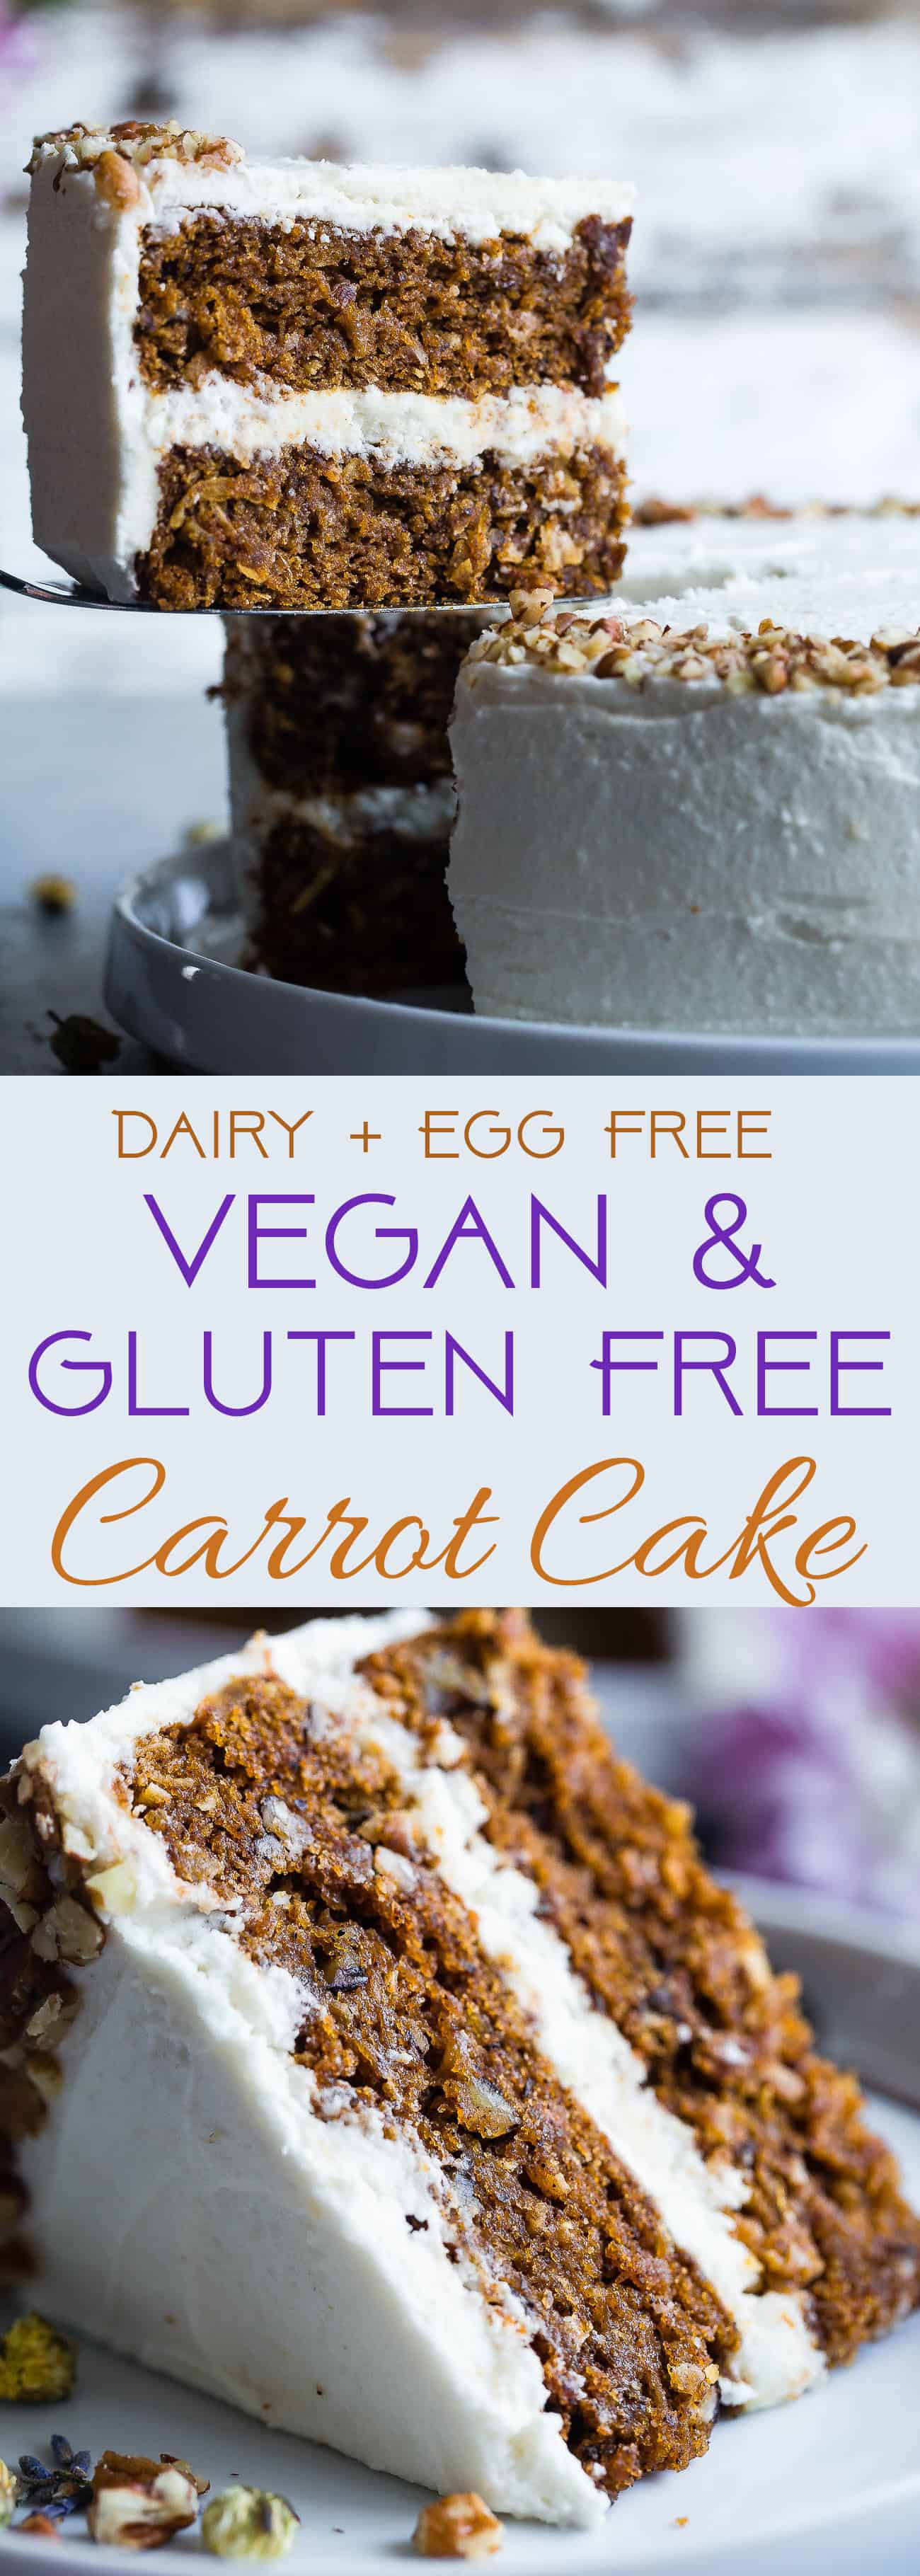 Vegan Gluten Free Carrot Cake
 Vegan Gluten Free Dairy Free Carrot Cake